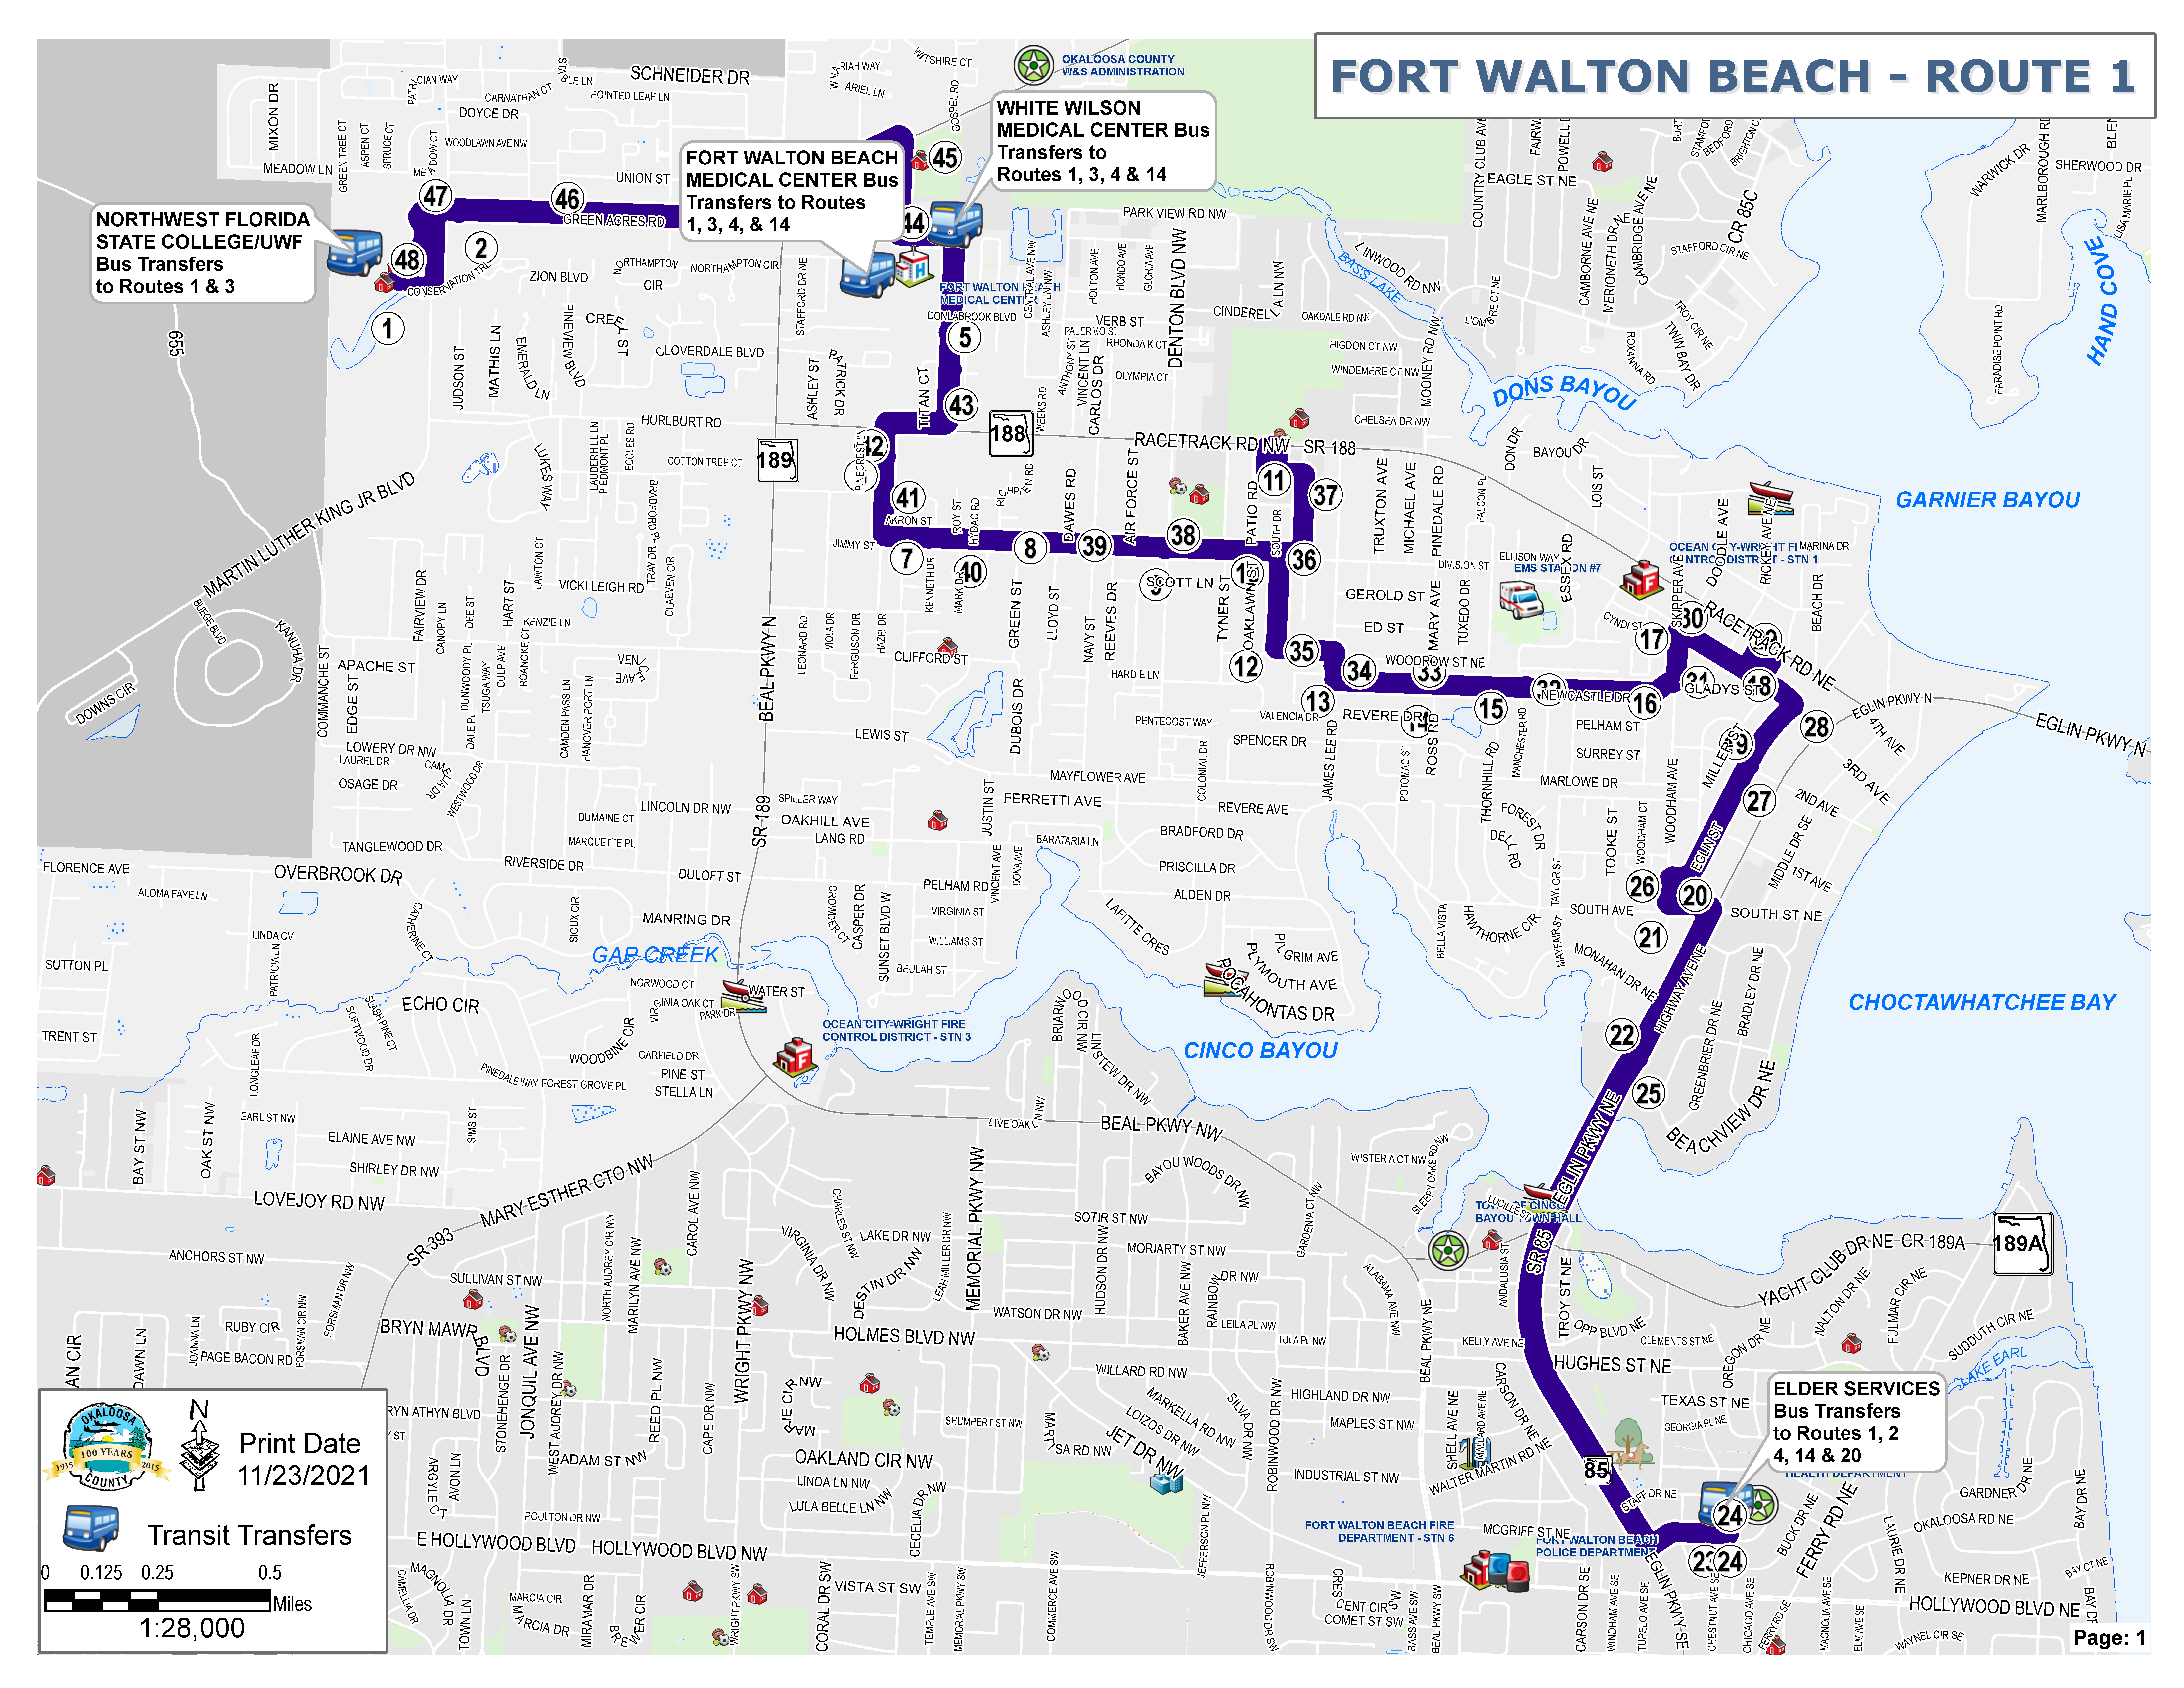 Fort Walton Beach Route 1